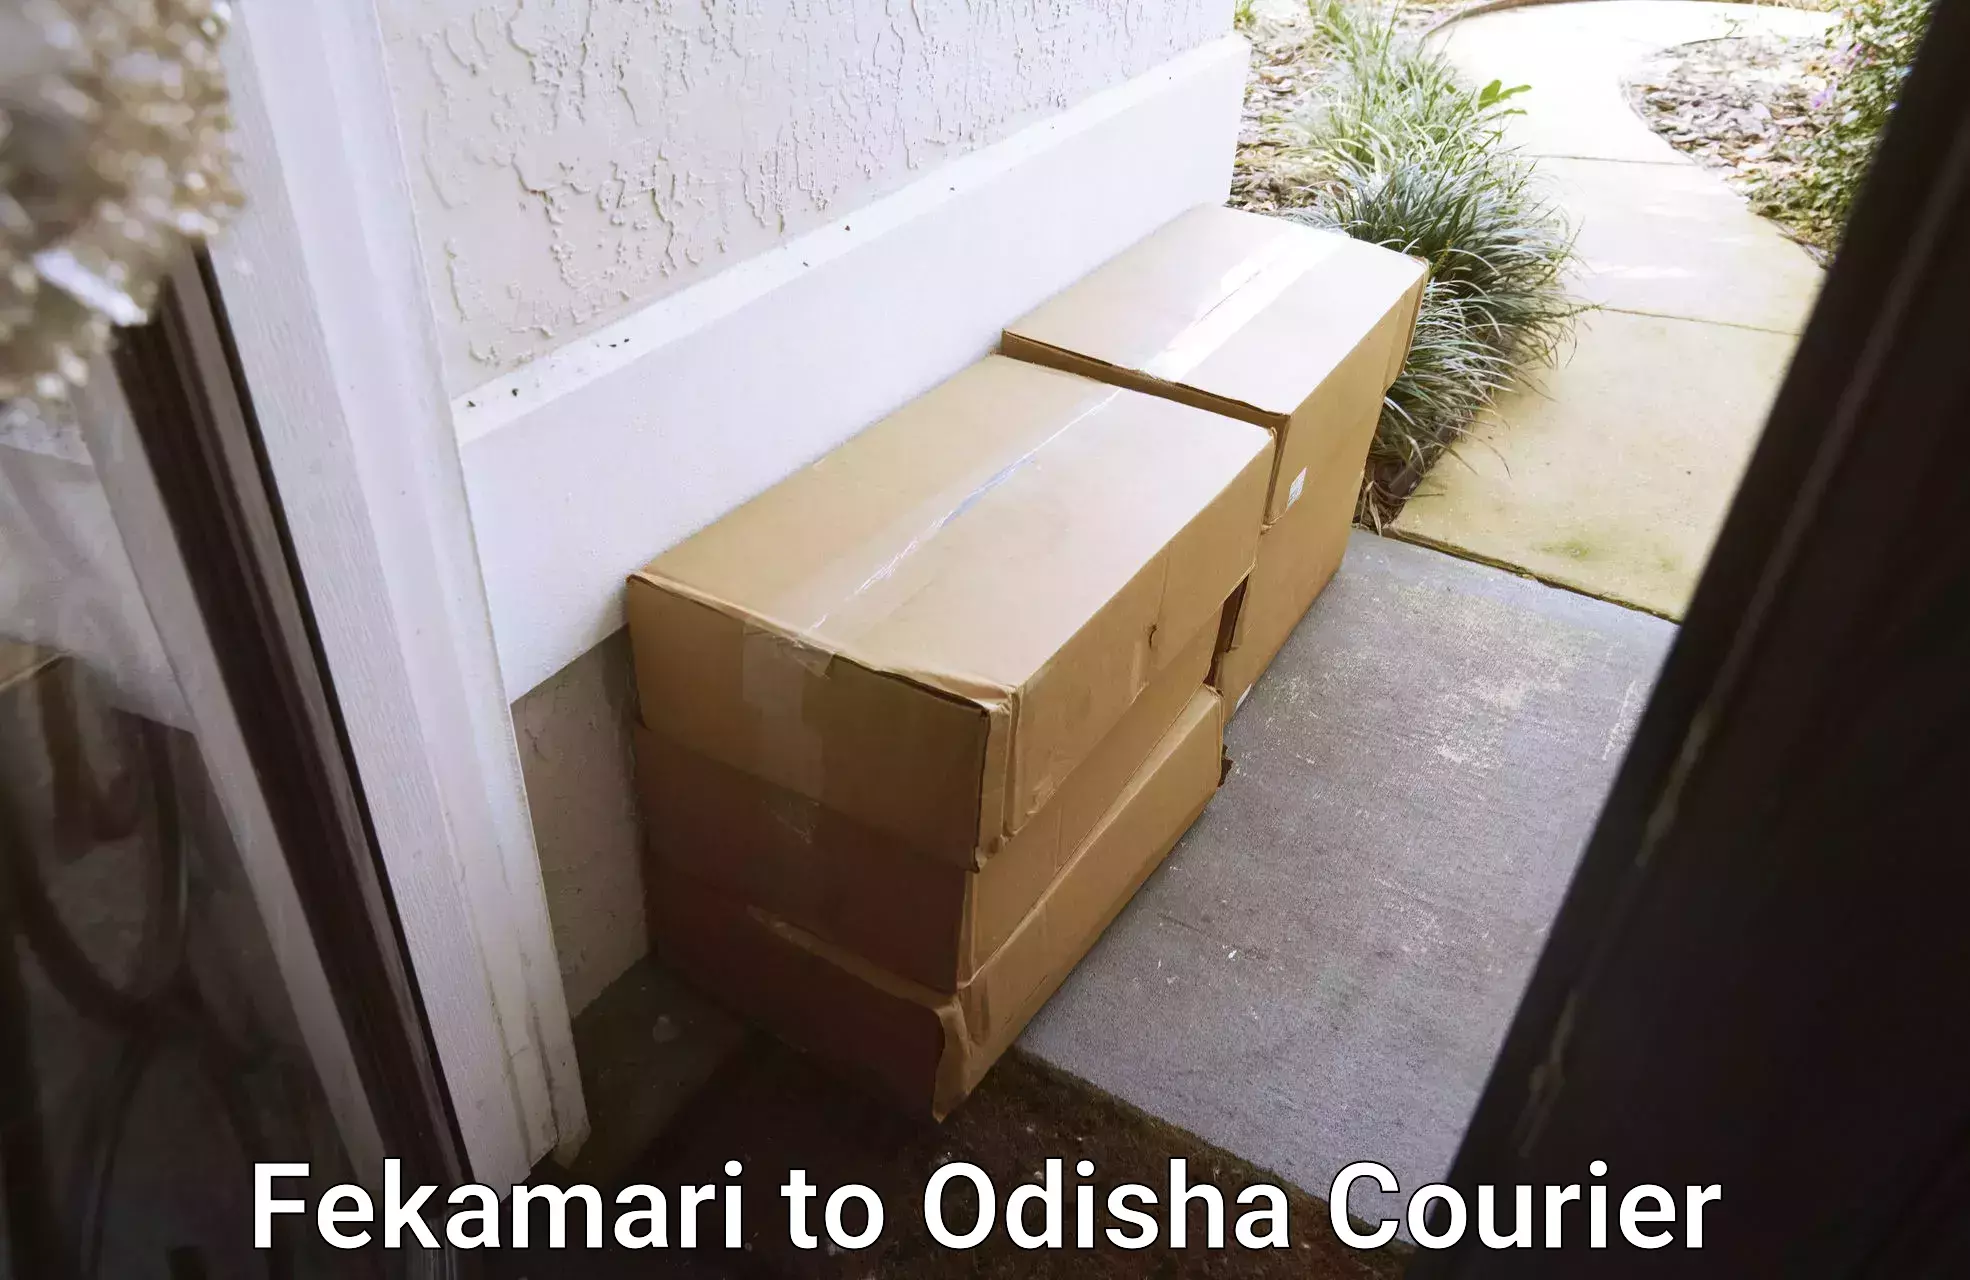 Door-to-door freight service Fekamari to Odisha